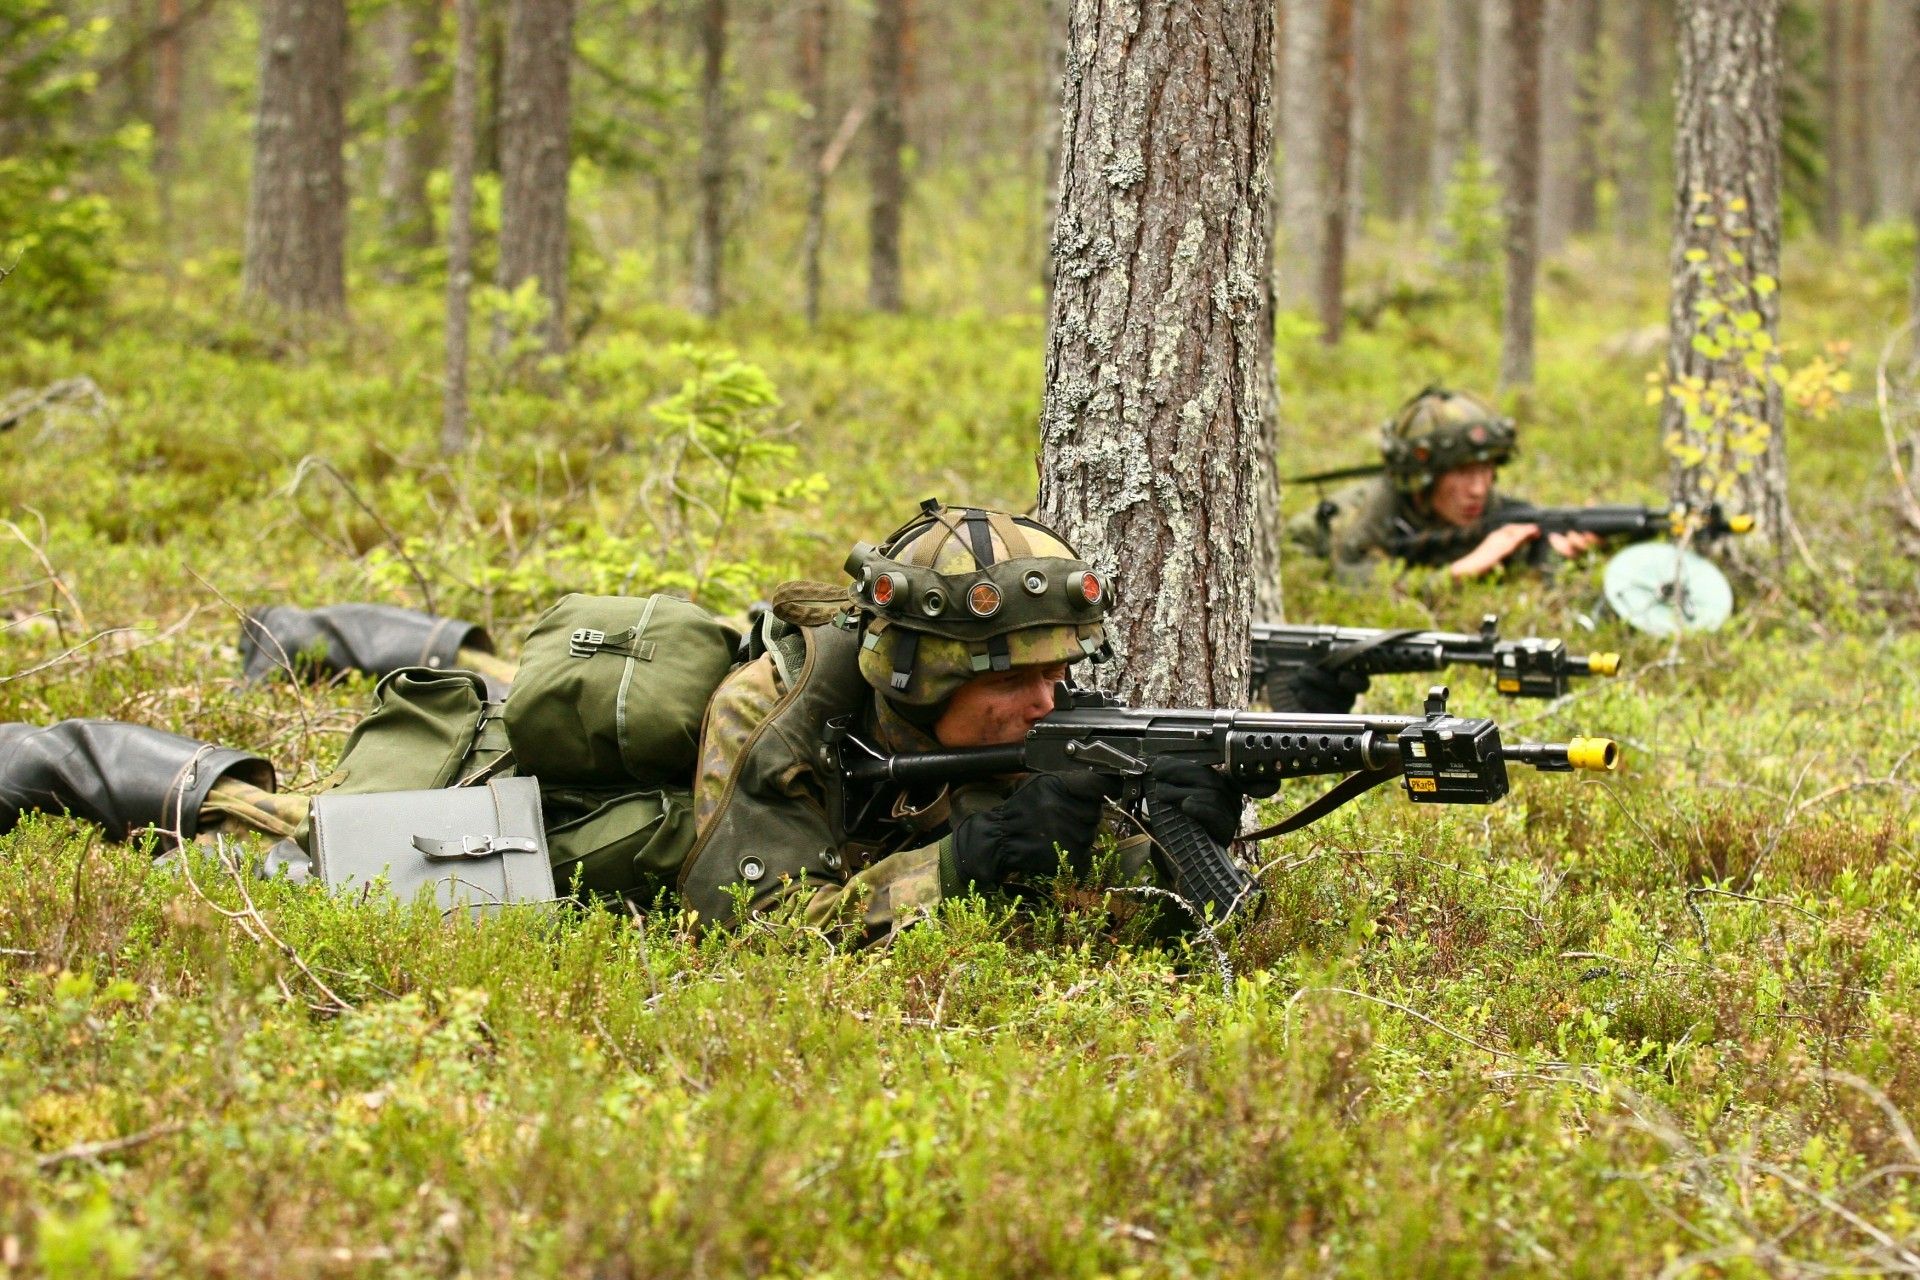 W ramach reform siły zbrojne Finlandii przeprowadzają redukcje personelu. Zwolnienia będą jednak dotyczyć głównie pracowników cywilnych. Fot. Finnish Defence Forces.